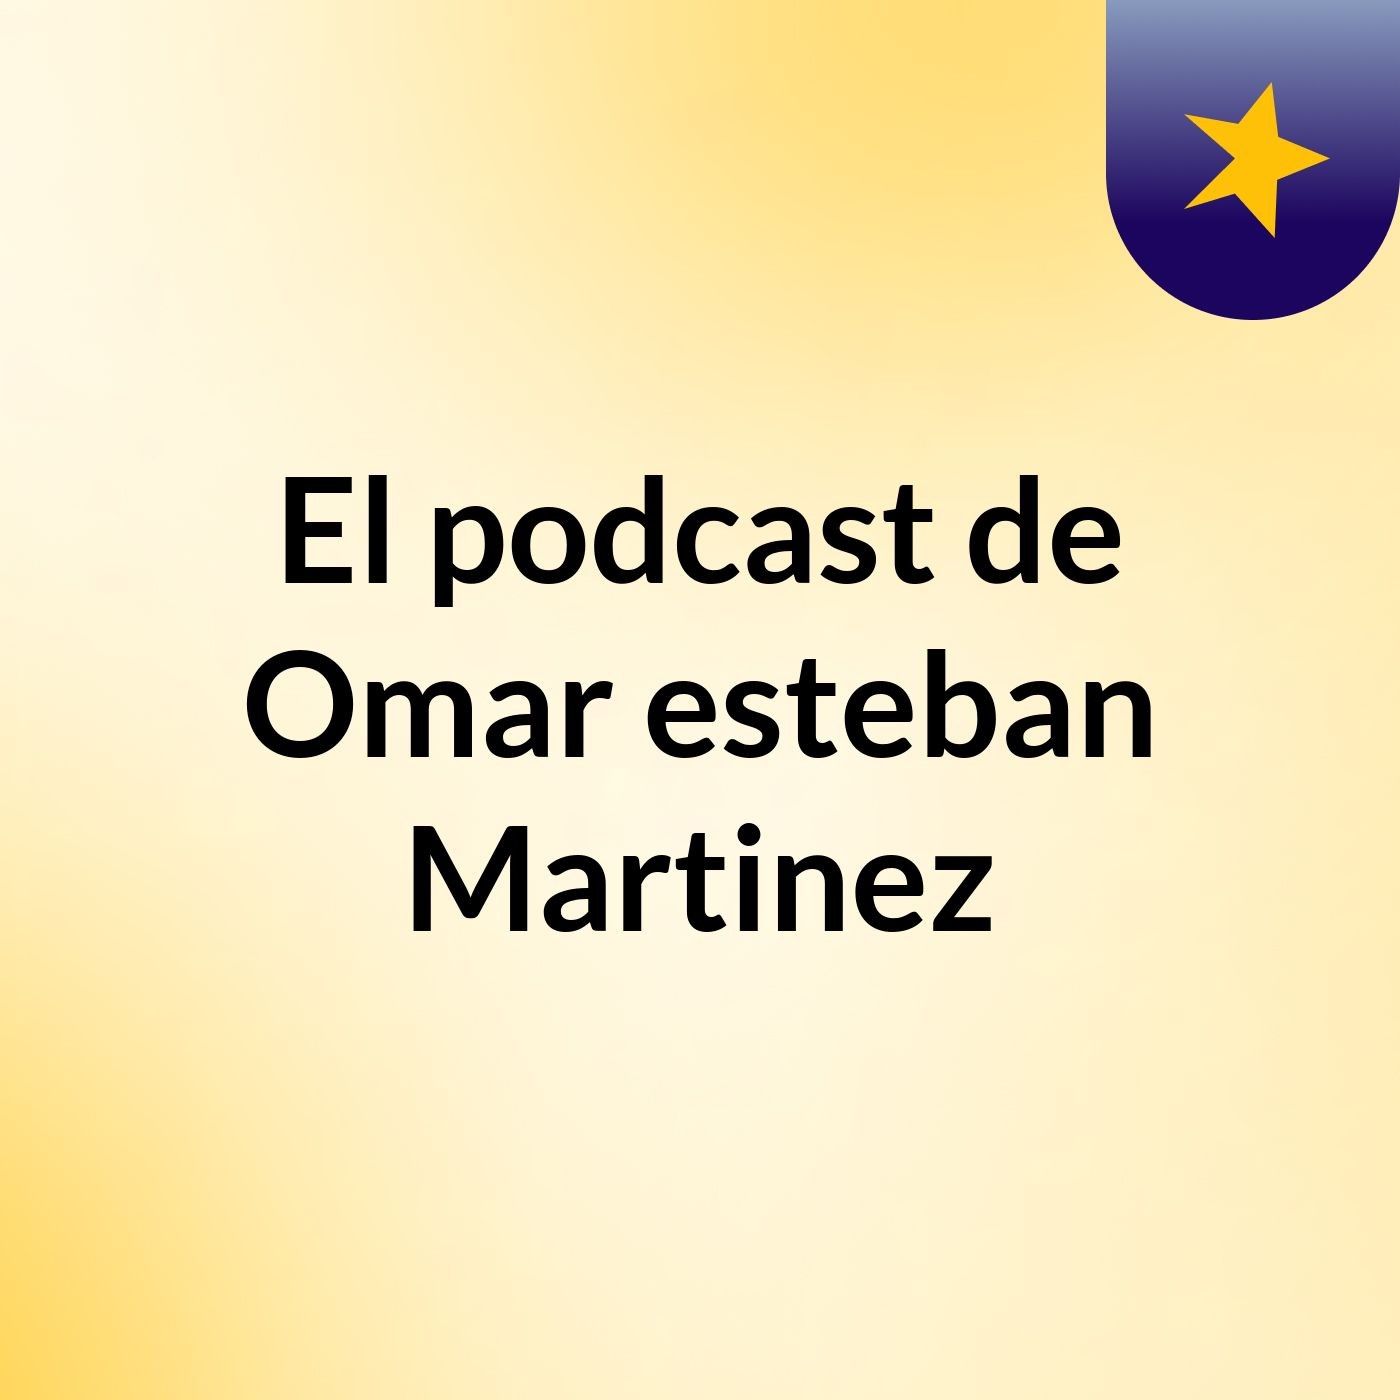 El podcast de Omar esteban Martinez